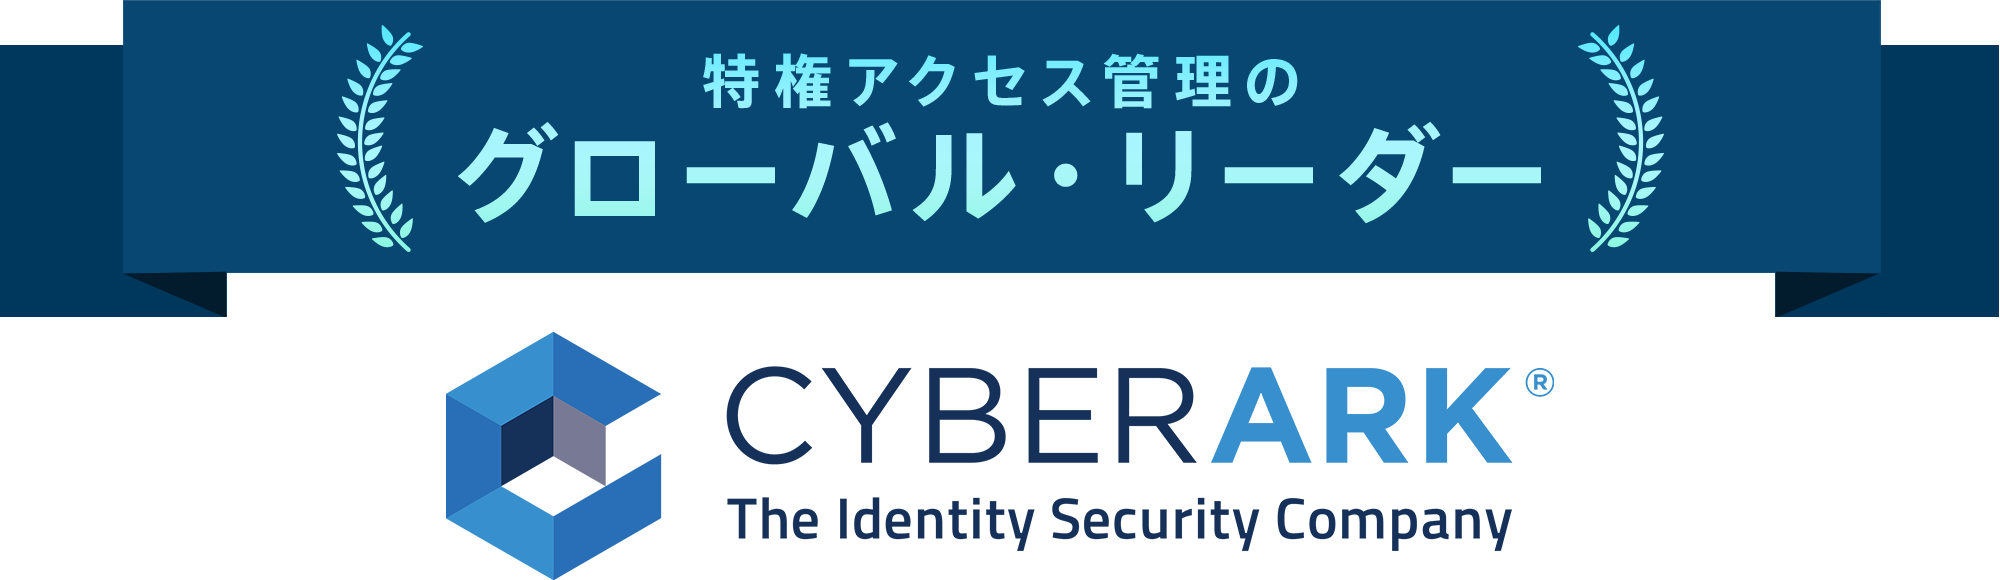 特権アクセス管理のグローバル・リーダーCyberArk（サイバーアーク）